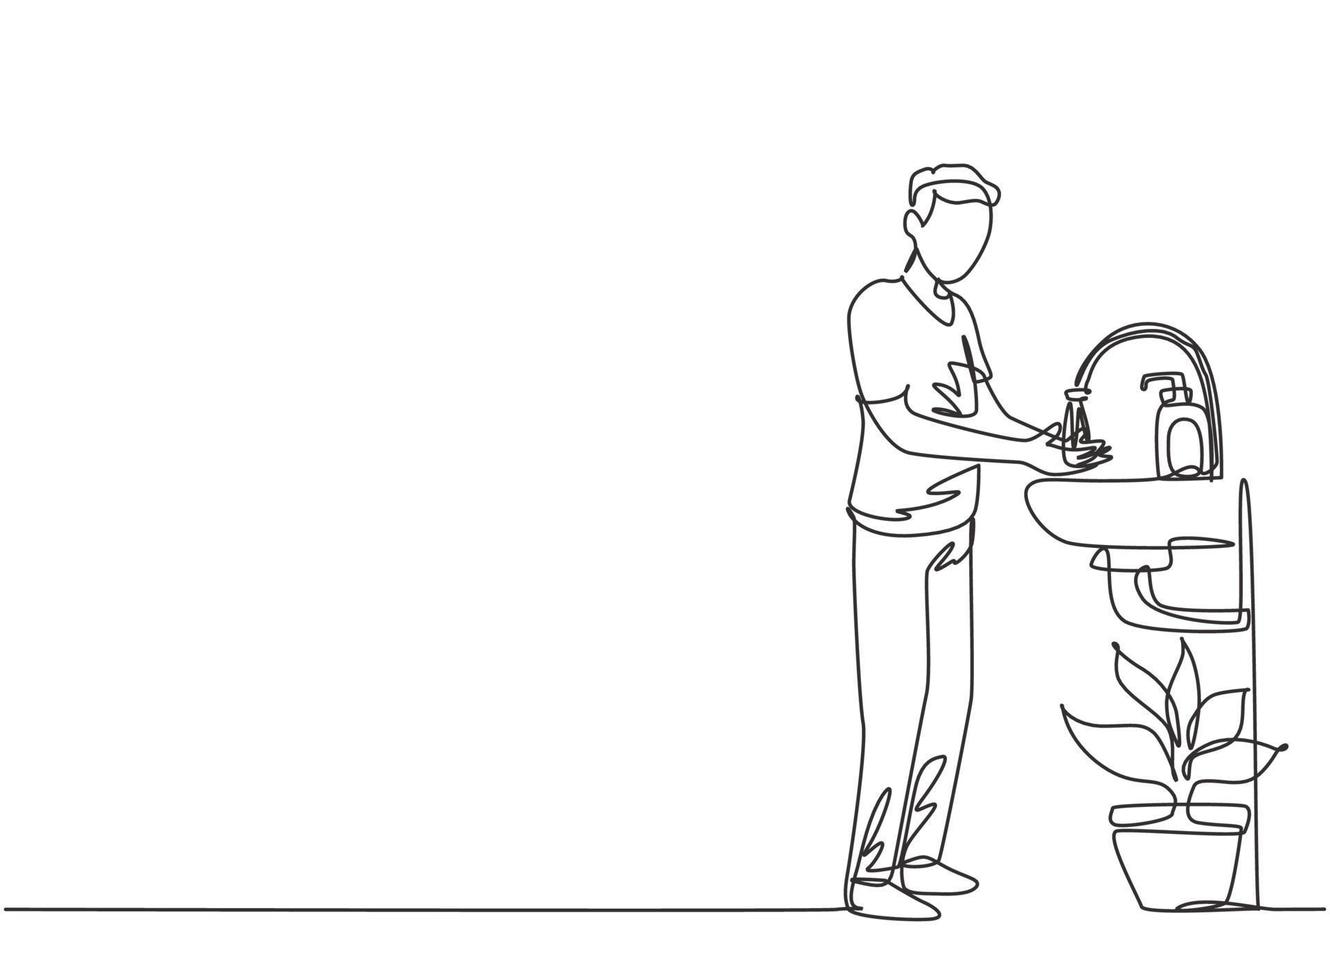 enda kontinuerlig linje som ritar en man tvättar händerna i diskbänken, det finns en såpautomat vid kranen och det finns en kruka med växter under diskbänken. en linje rita grafisk design vektor illustration